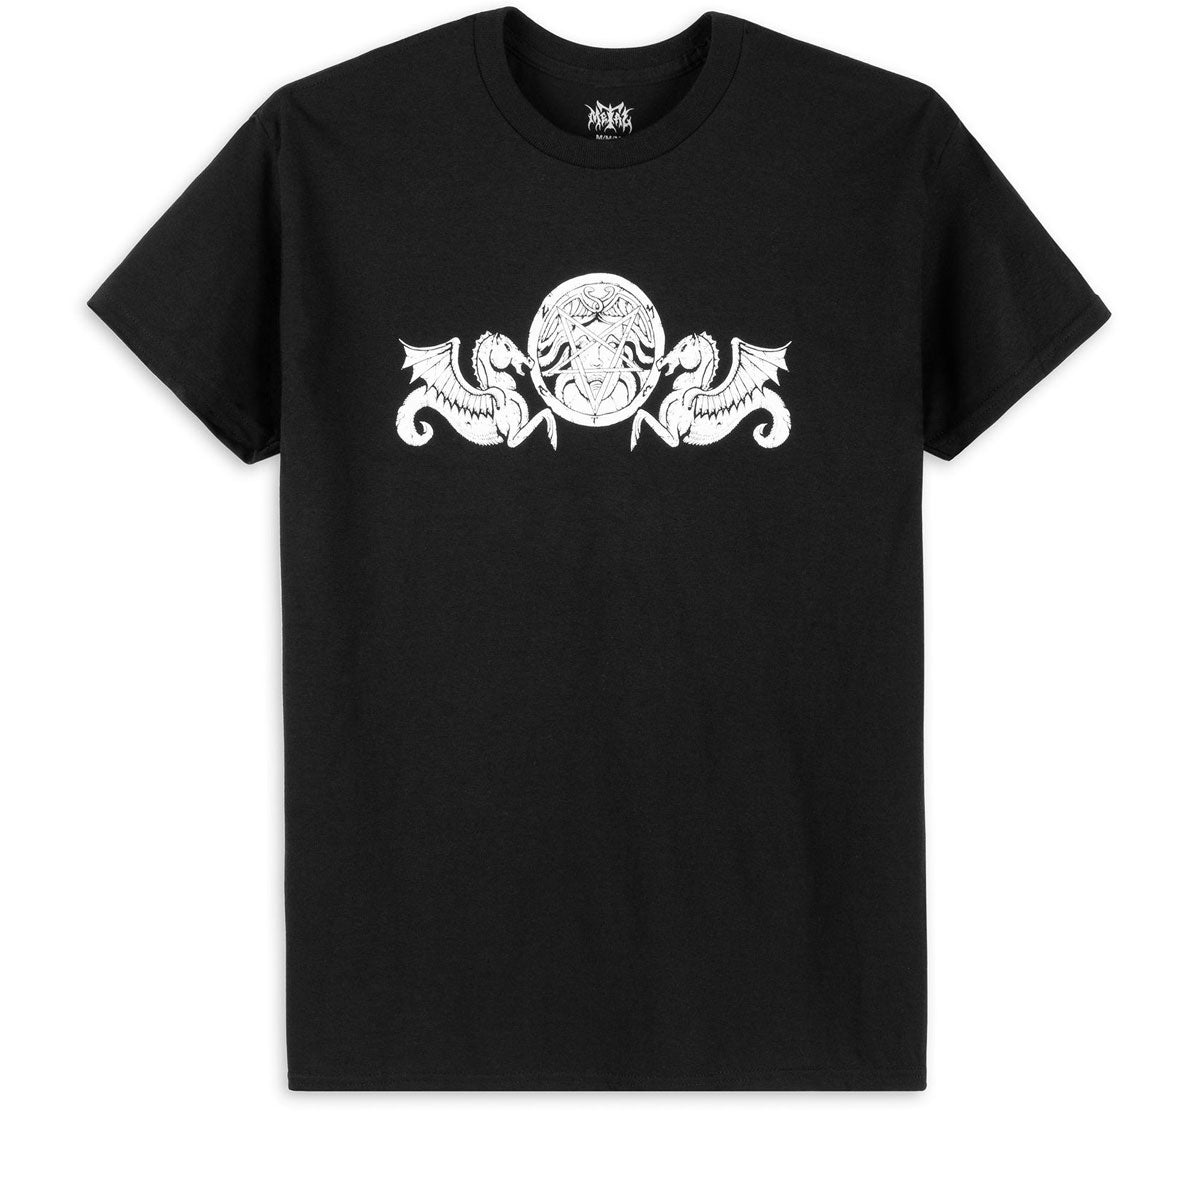 Metal Seahorse T-Shirt - Black image 1